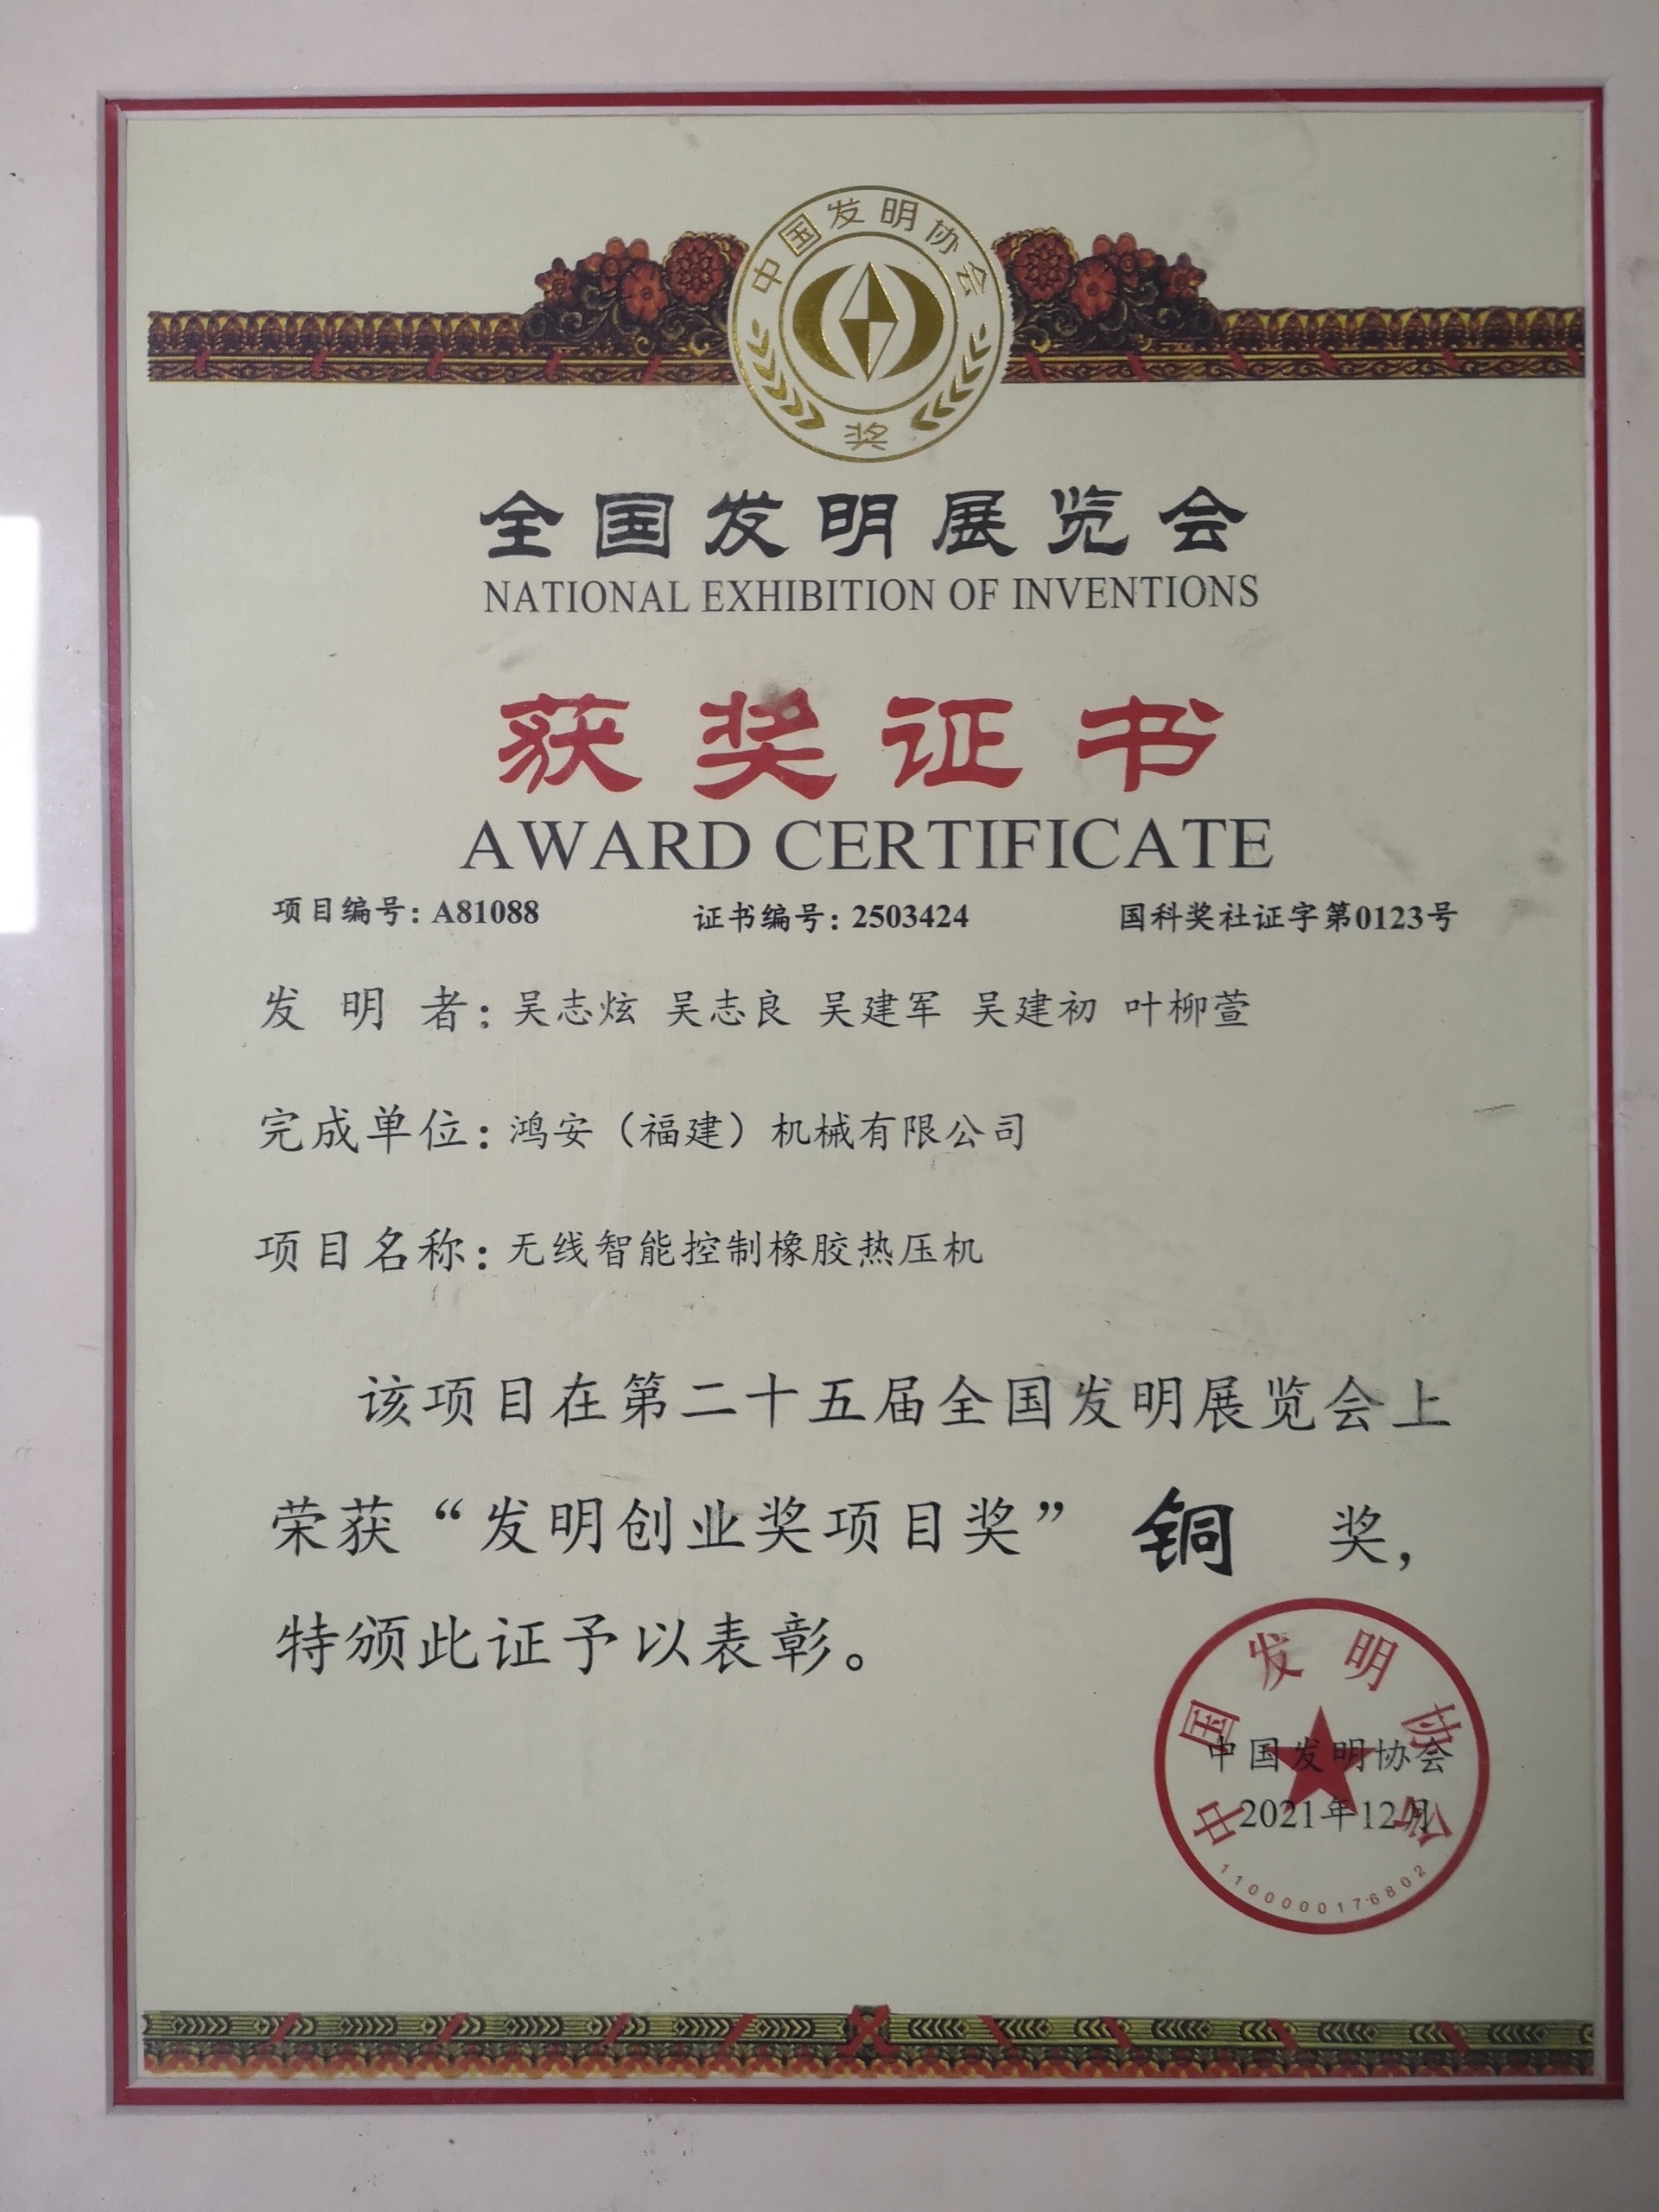 鸿安公司在第25届全国发明展荣获双铜奖